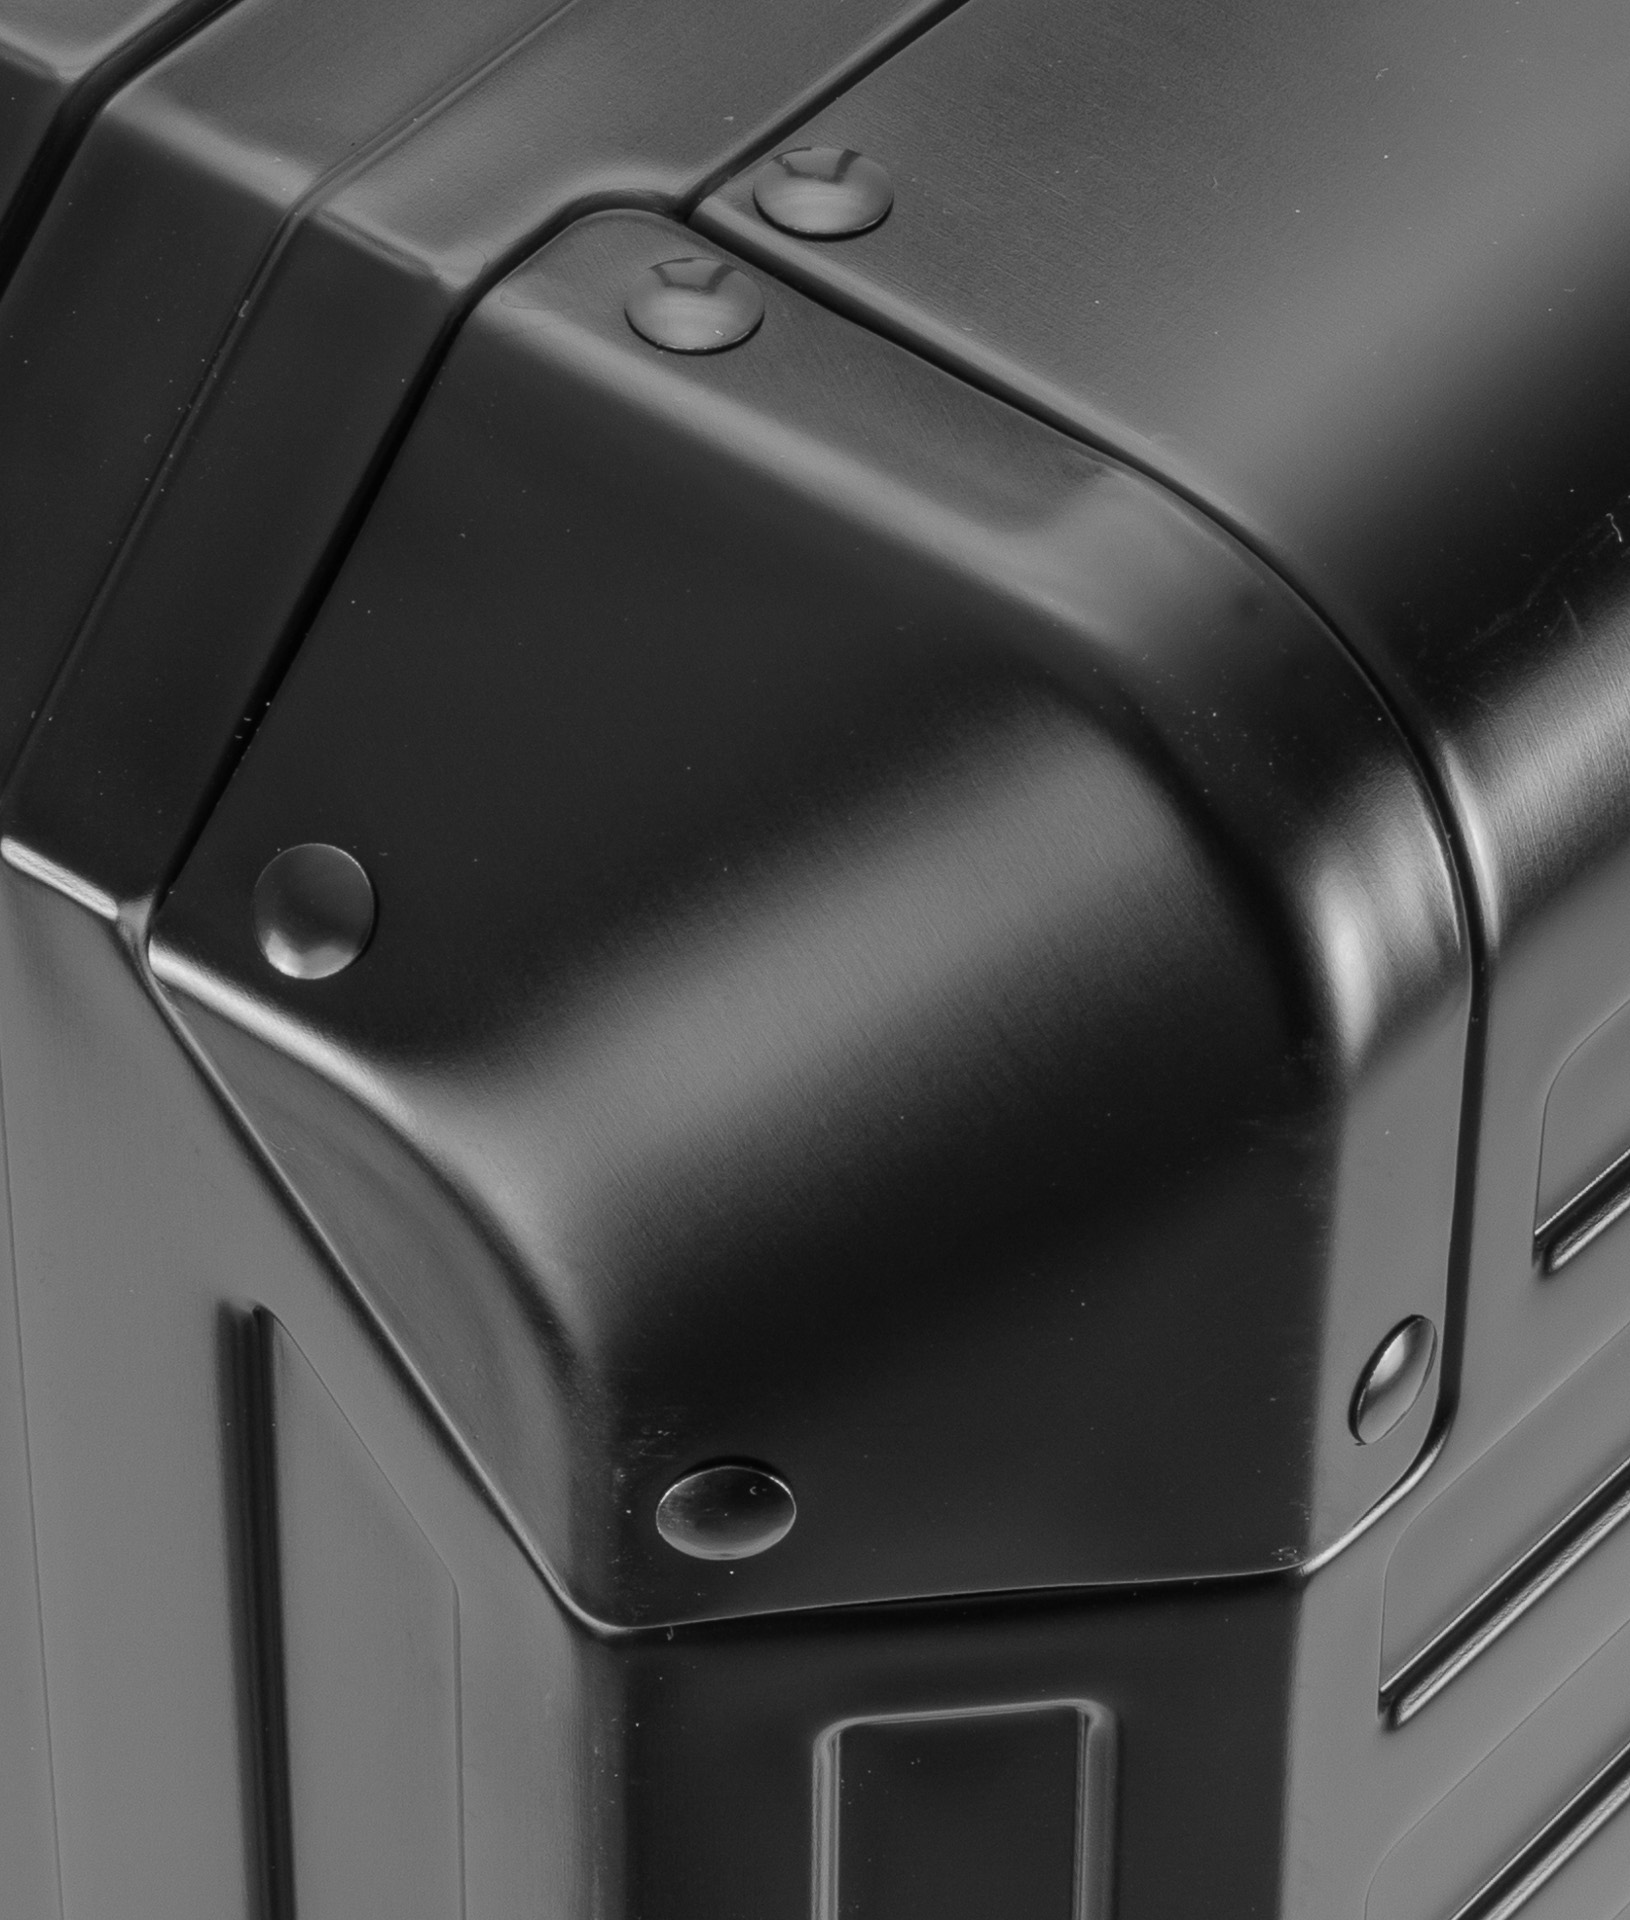 Schutzhülle für Koffer Grösse XL schwarz